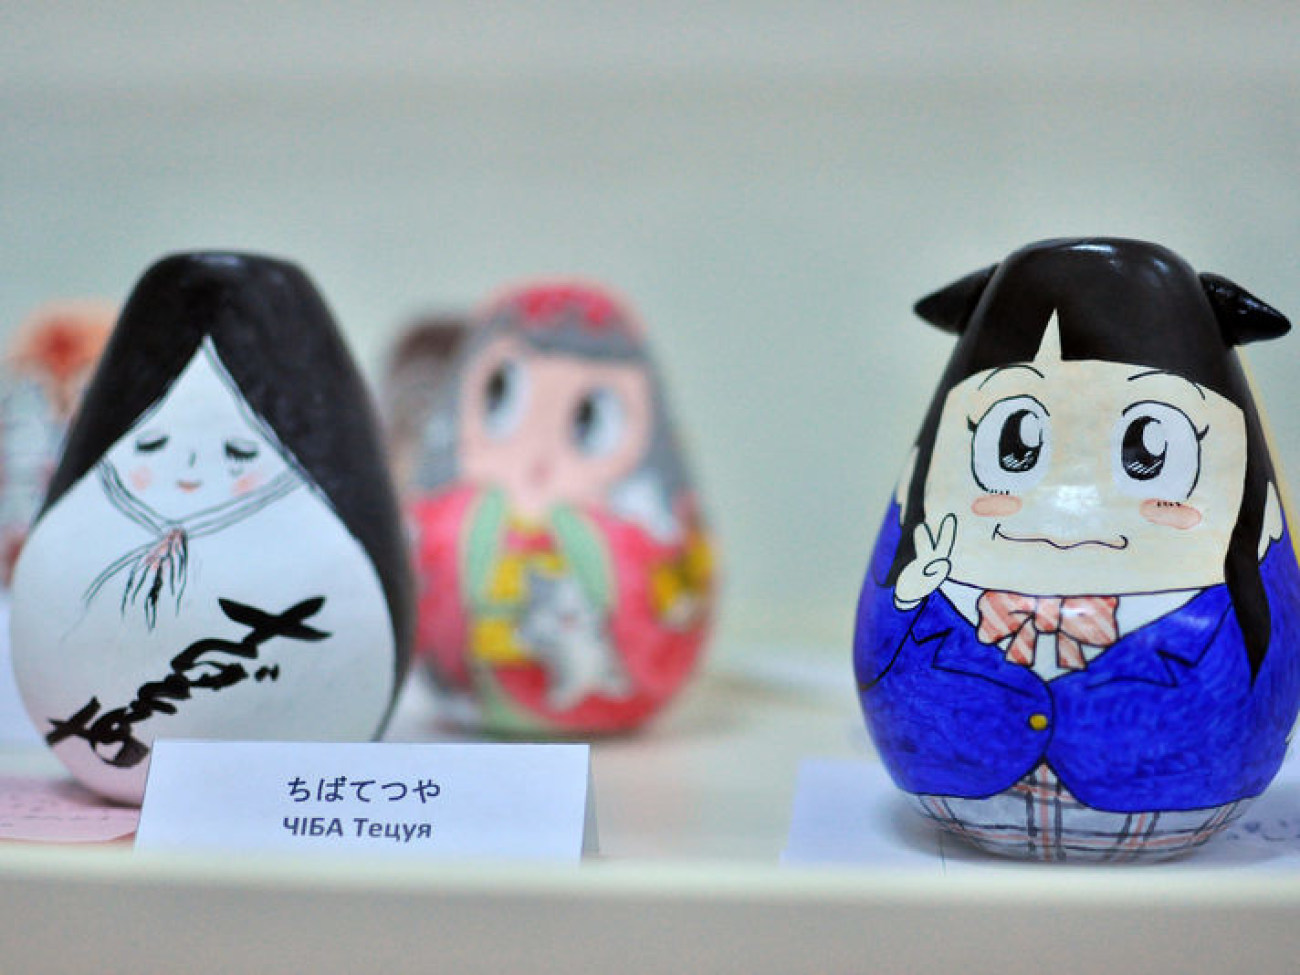 В Киеве открылась выставка японских кукол окиаґари-кобоши